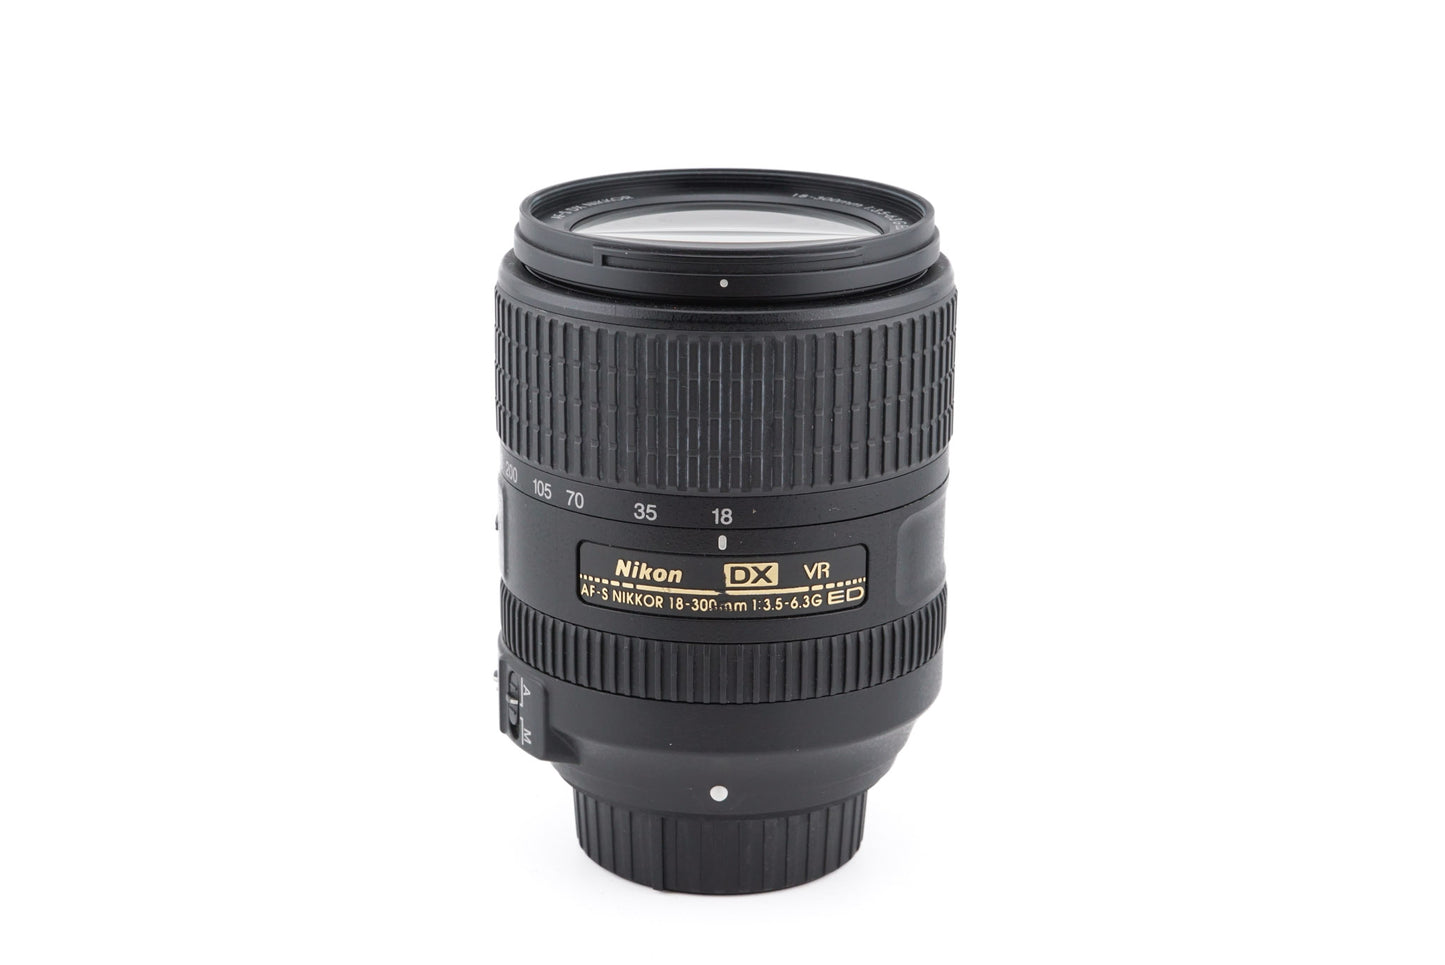 Nikon 18-300mm f3.5-6.3G ED VR DX AF-S Nikkor - Lens